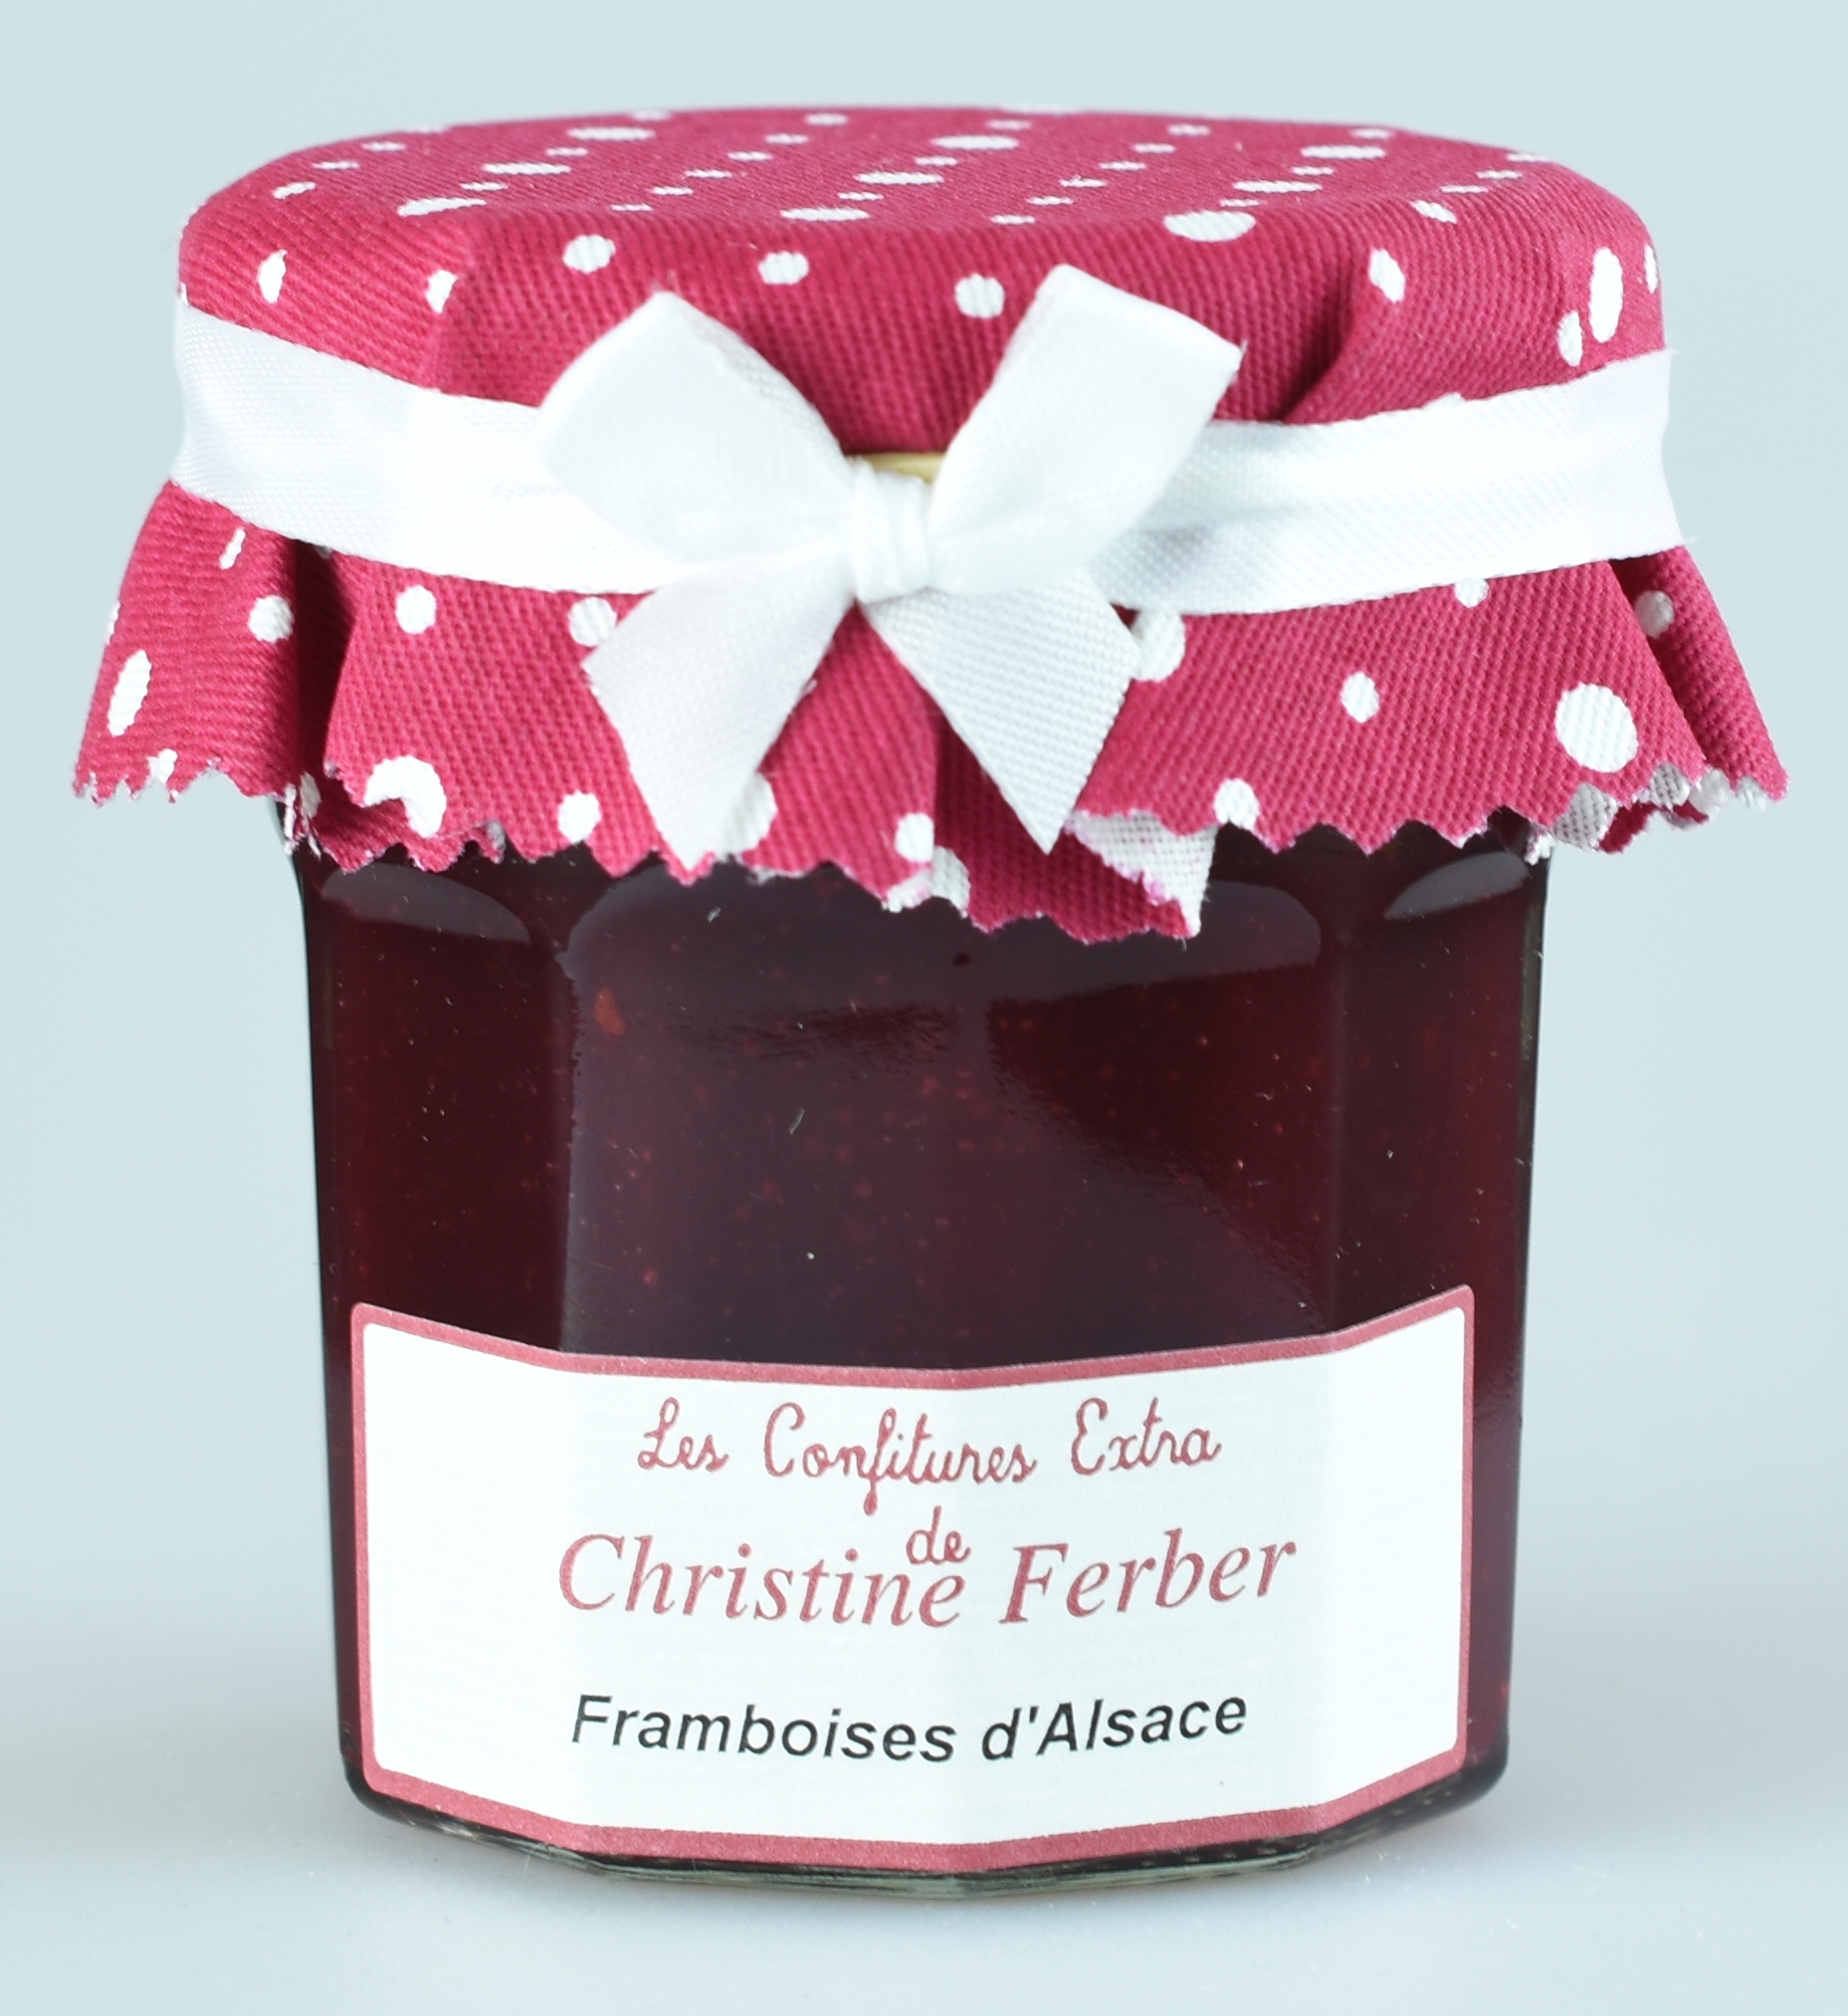 Himbeeren ohne Kerne, Confiture fine, Framboises d'Alsace, Christine Ferber 0,22 kg